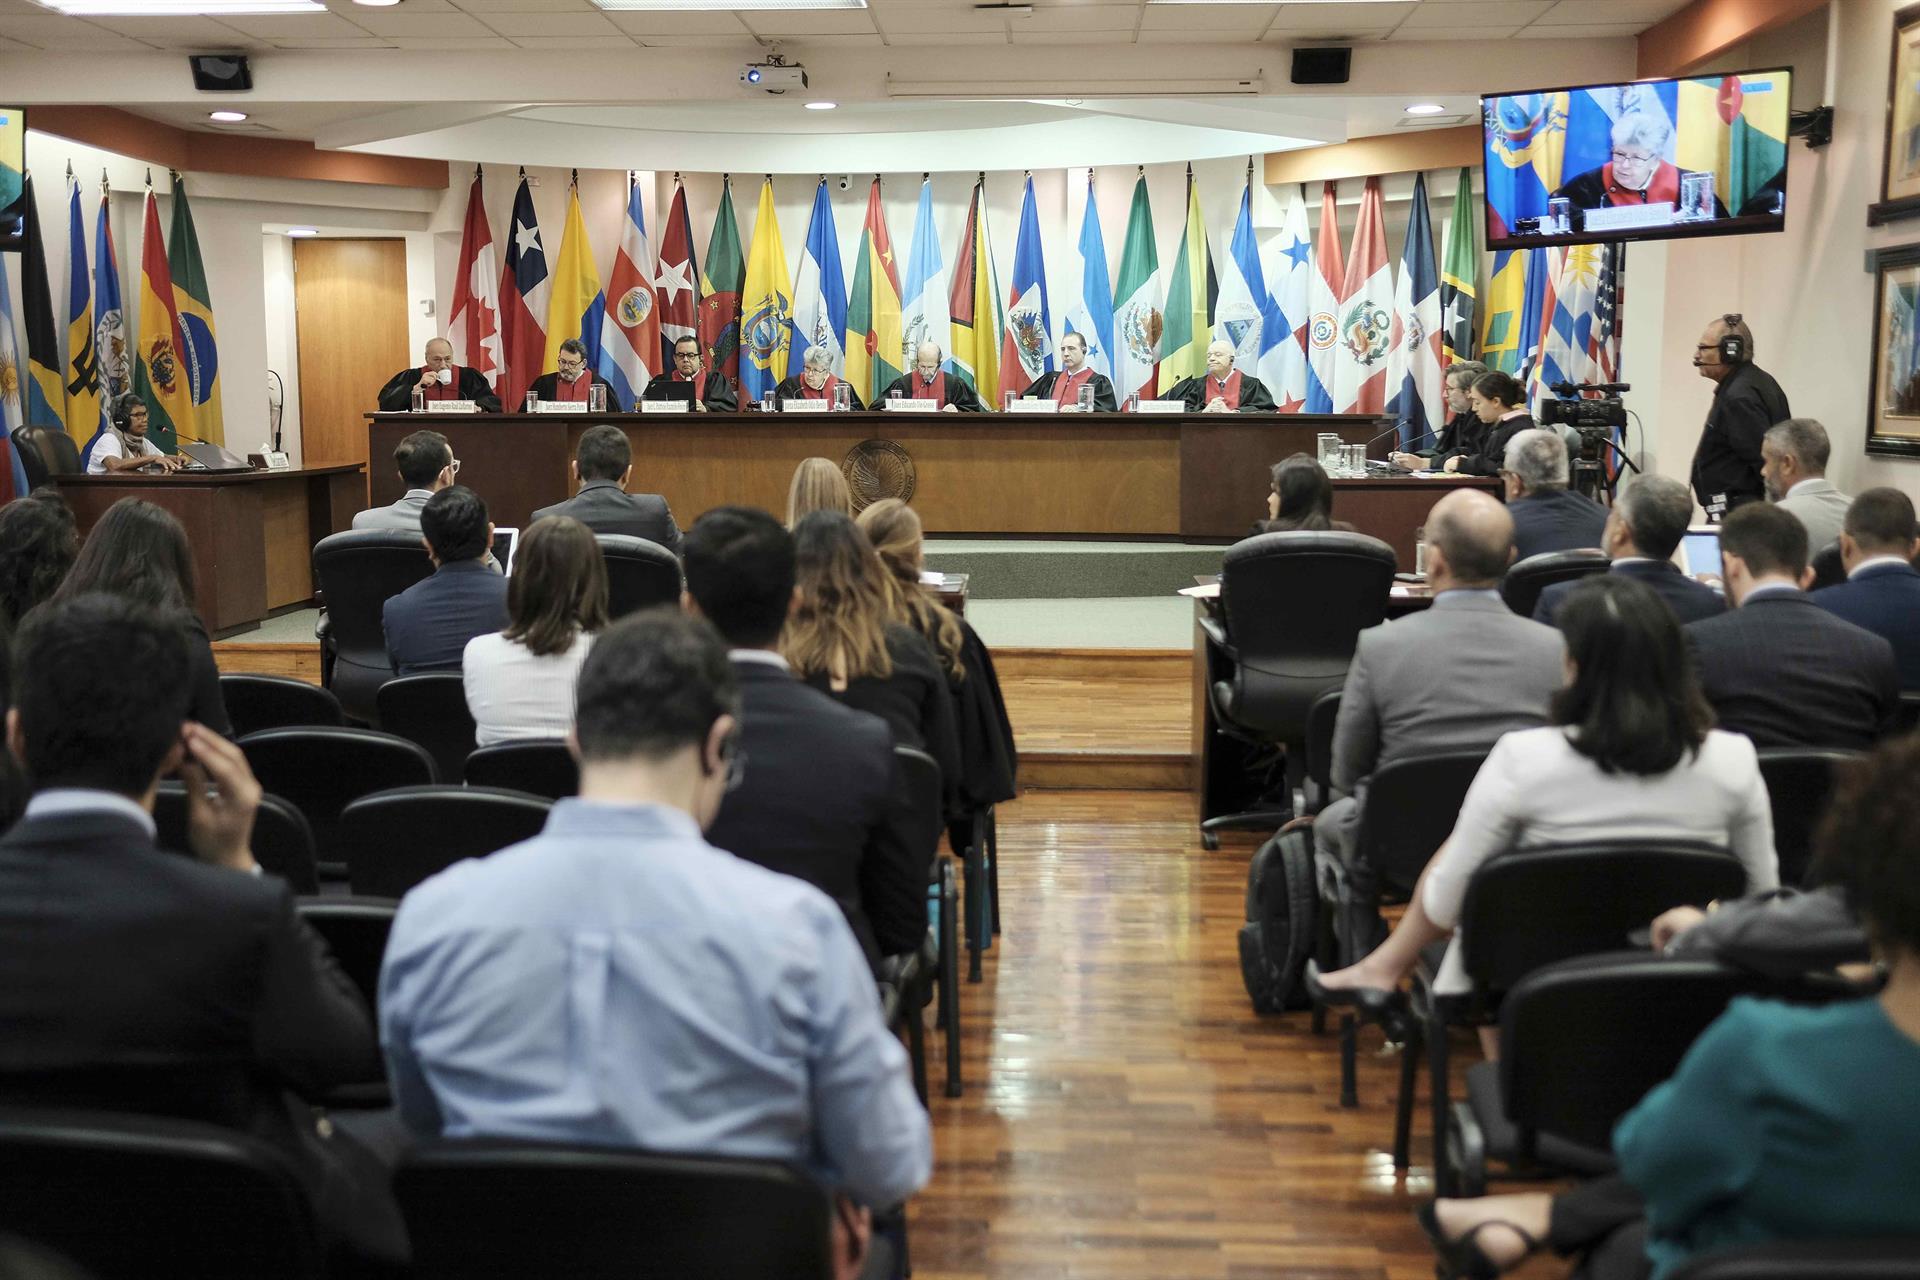 Corte Interamericana declara en desacato a Nicaragua y elevará caso a la OEA